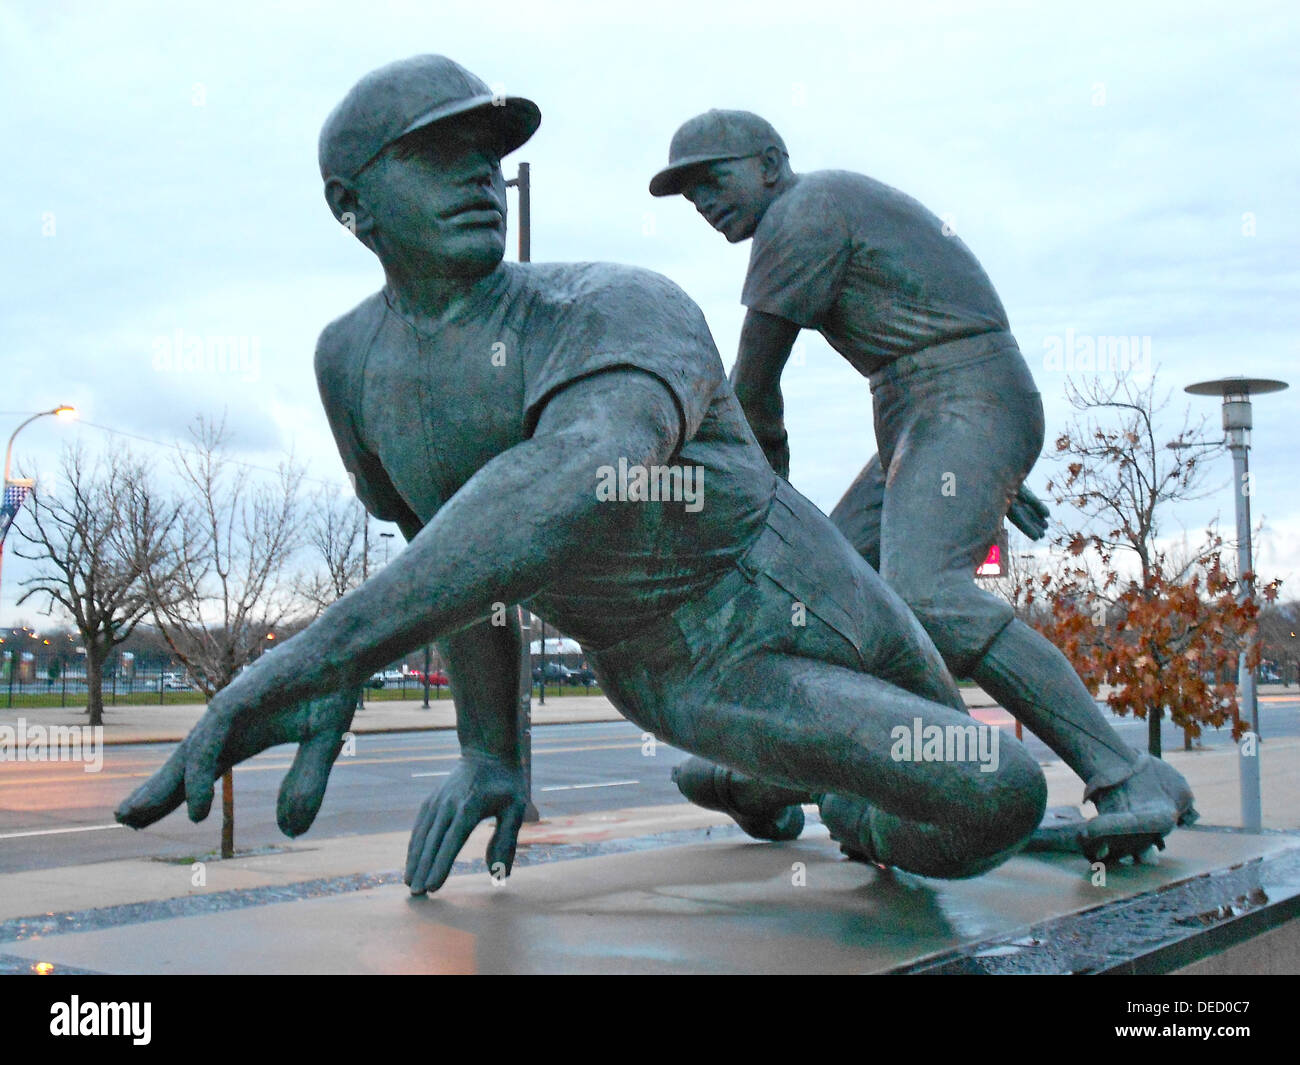 Spielen Sie am zweiten Base von Joe Brown (Bildhauer) im Jahr 1974 im Veterans Stadium, "zog" Citizens Bank Park installiert. Bronze-Skulptur; Betonsockel. SIRIS Referenz IAS PA000185. Stockfoto